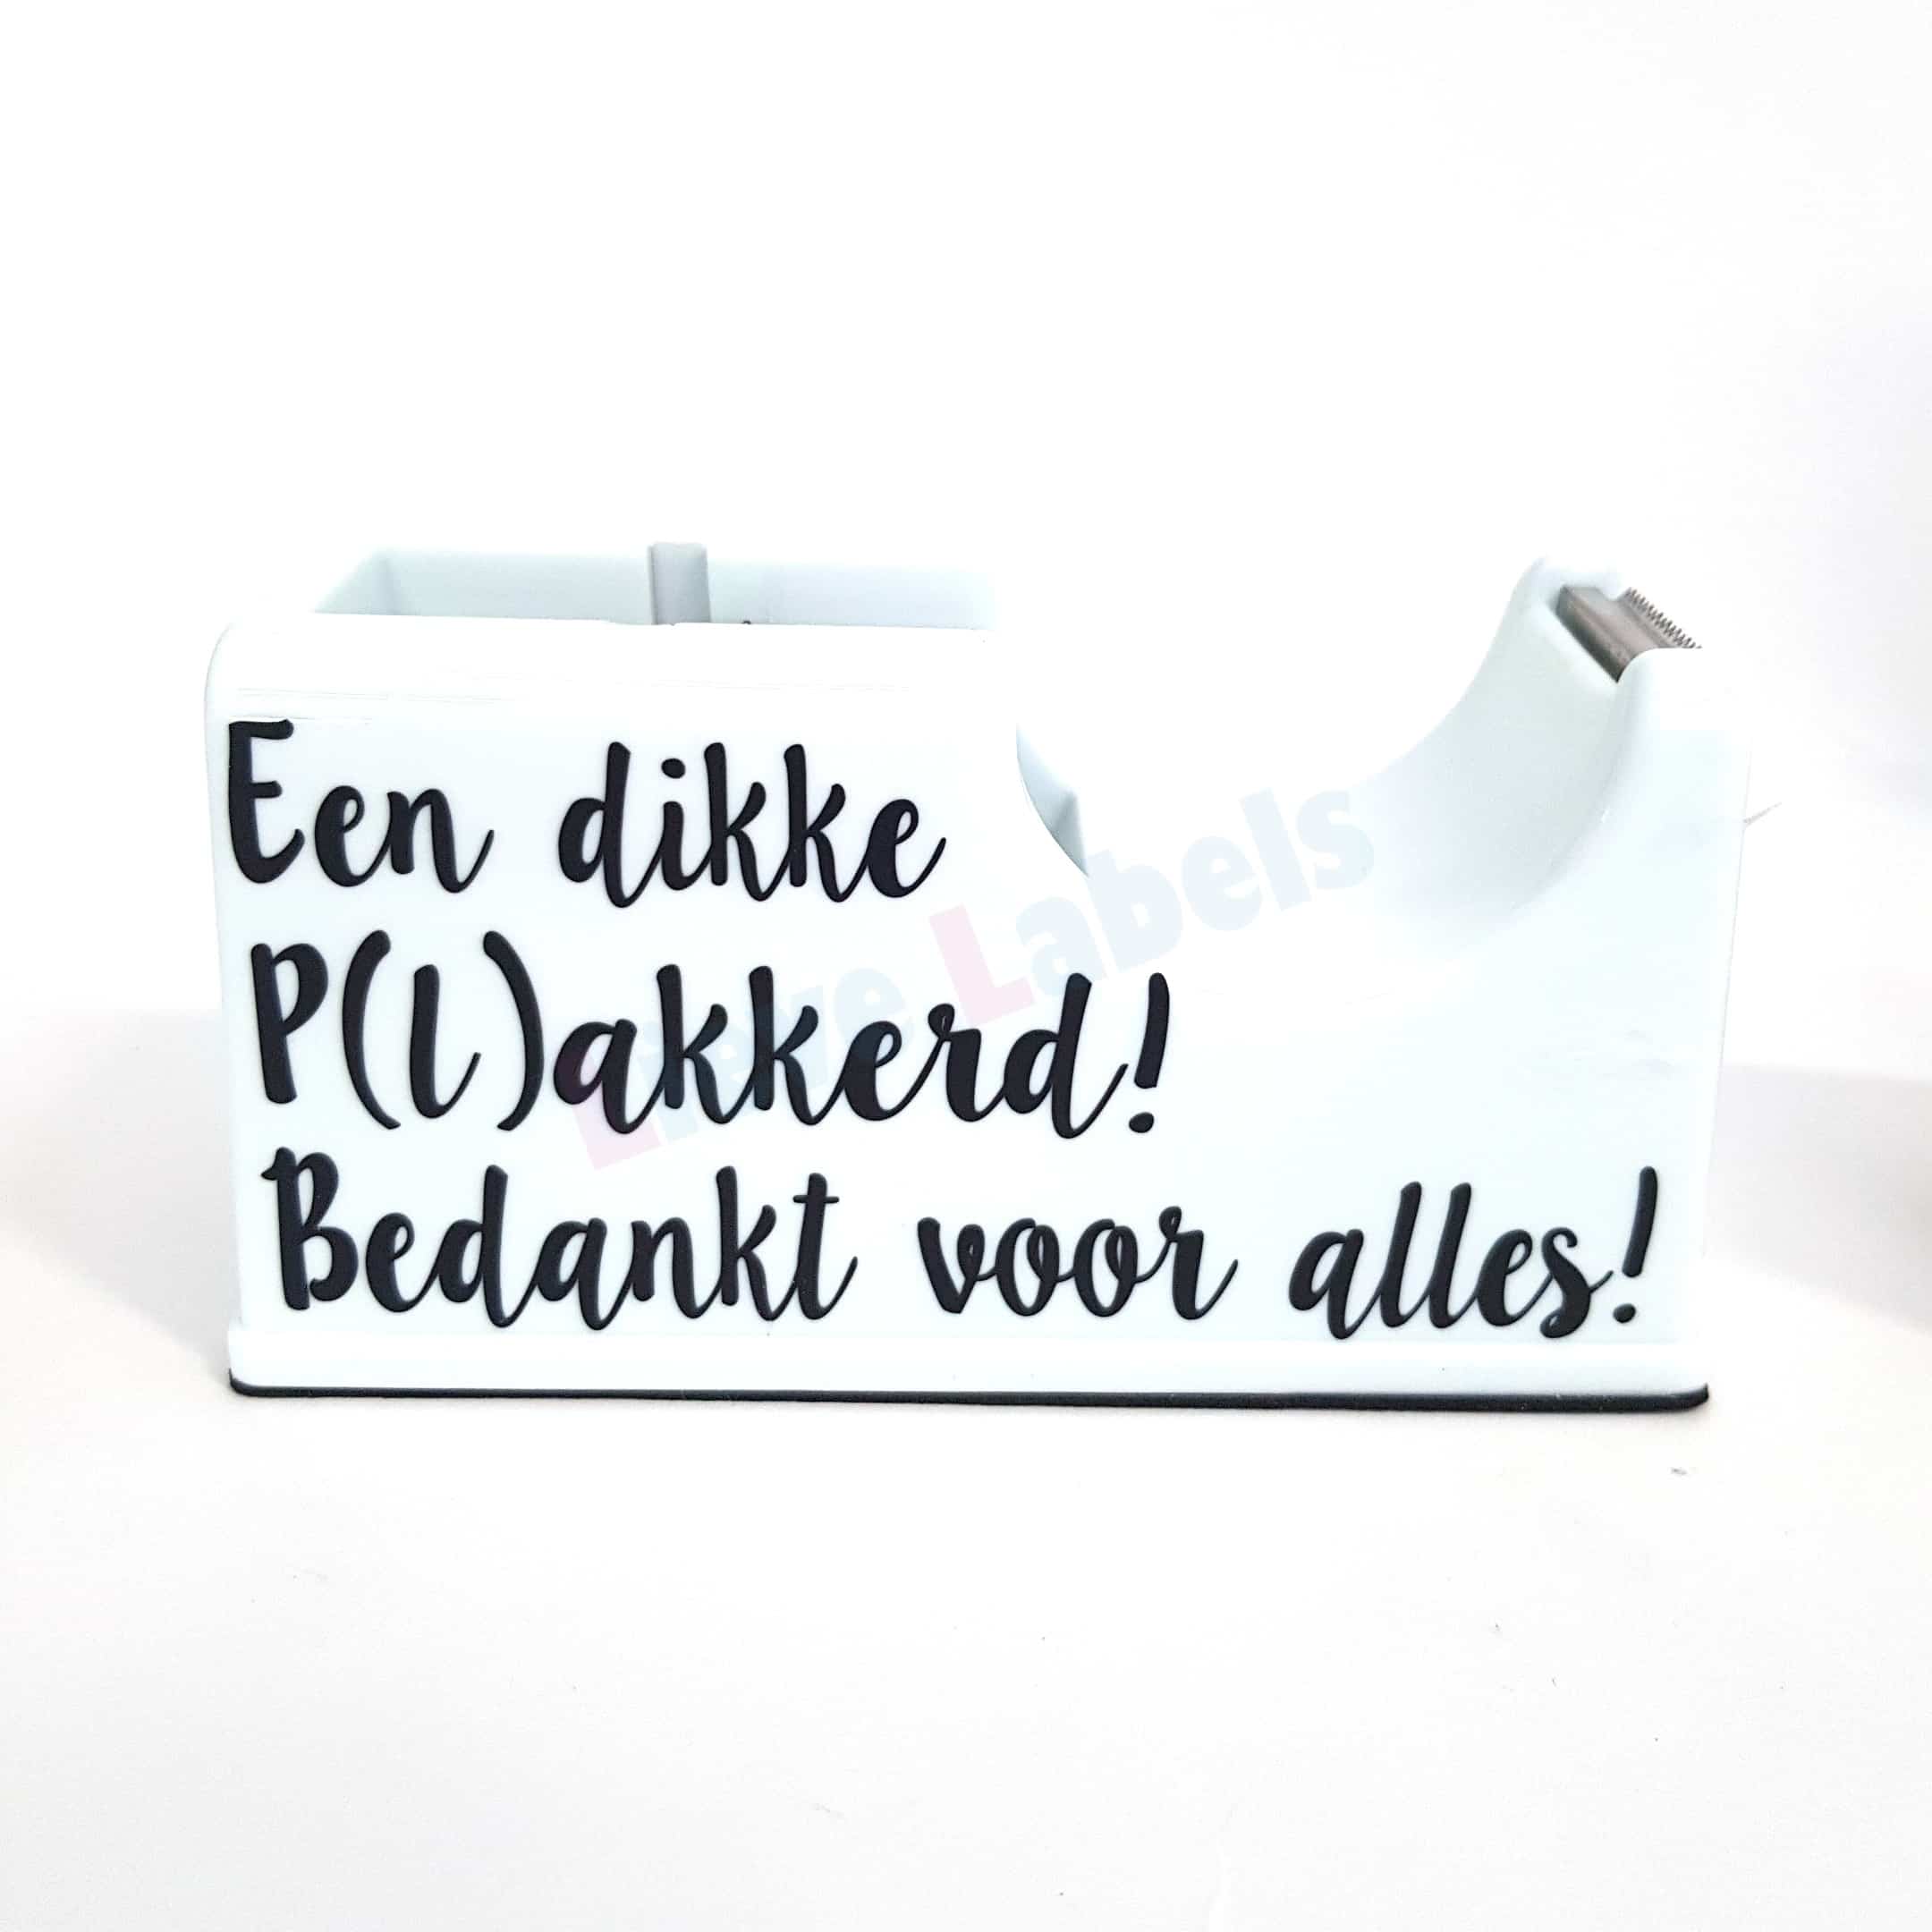 Verwonderend Een dikke P(l)akkerd - bedankt voor alles! - Lieve Labels.nl YX-82